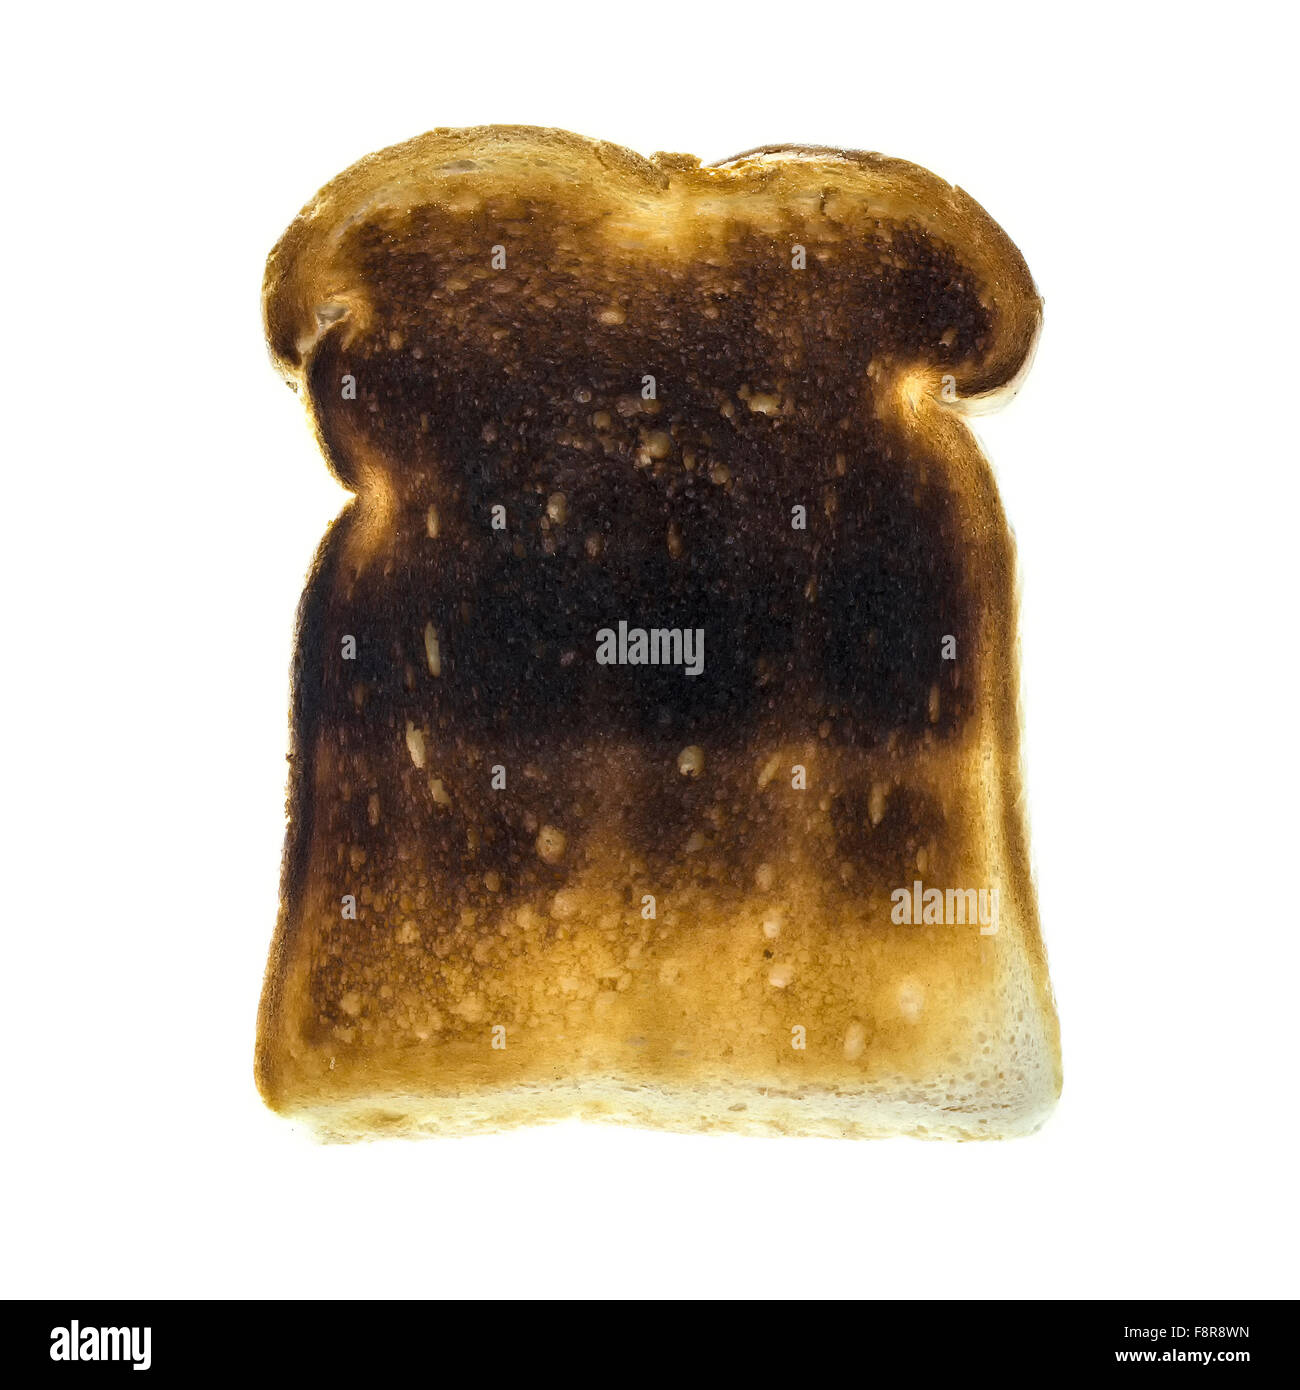 Burnt toast slice isolated on white background Stock Photo